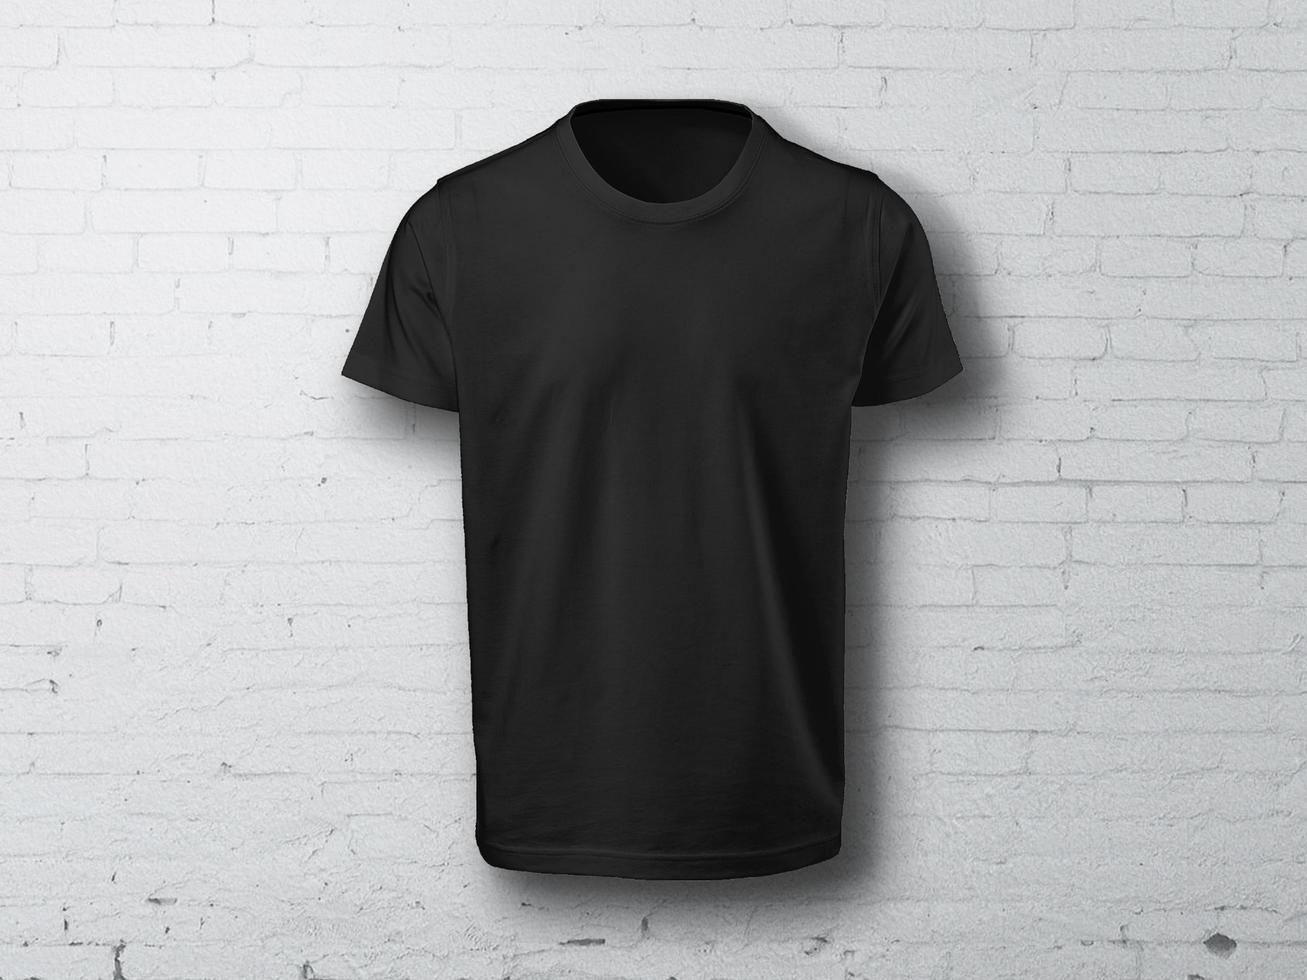 svart t-shirt mockup foto